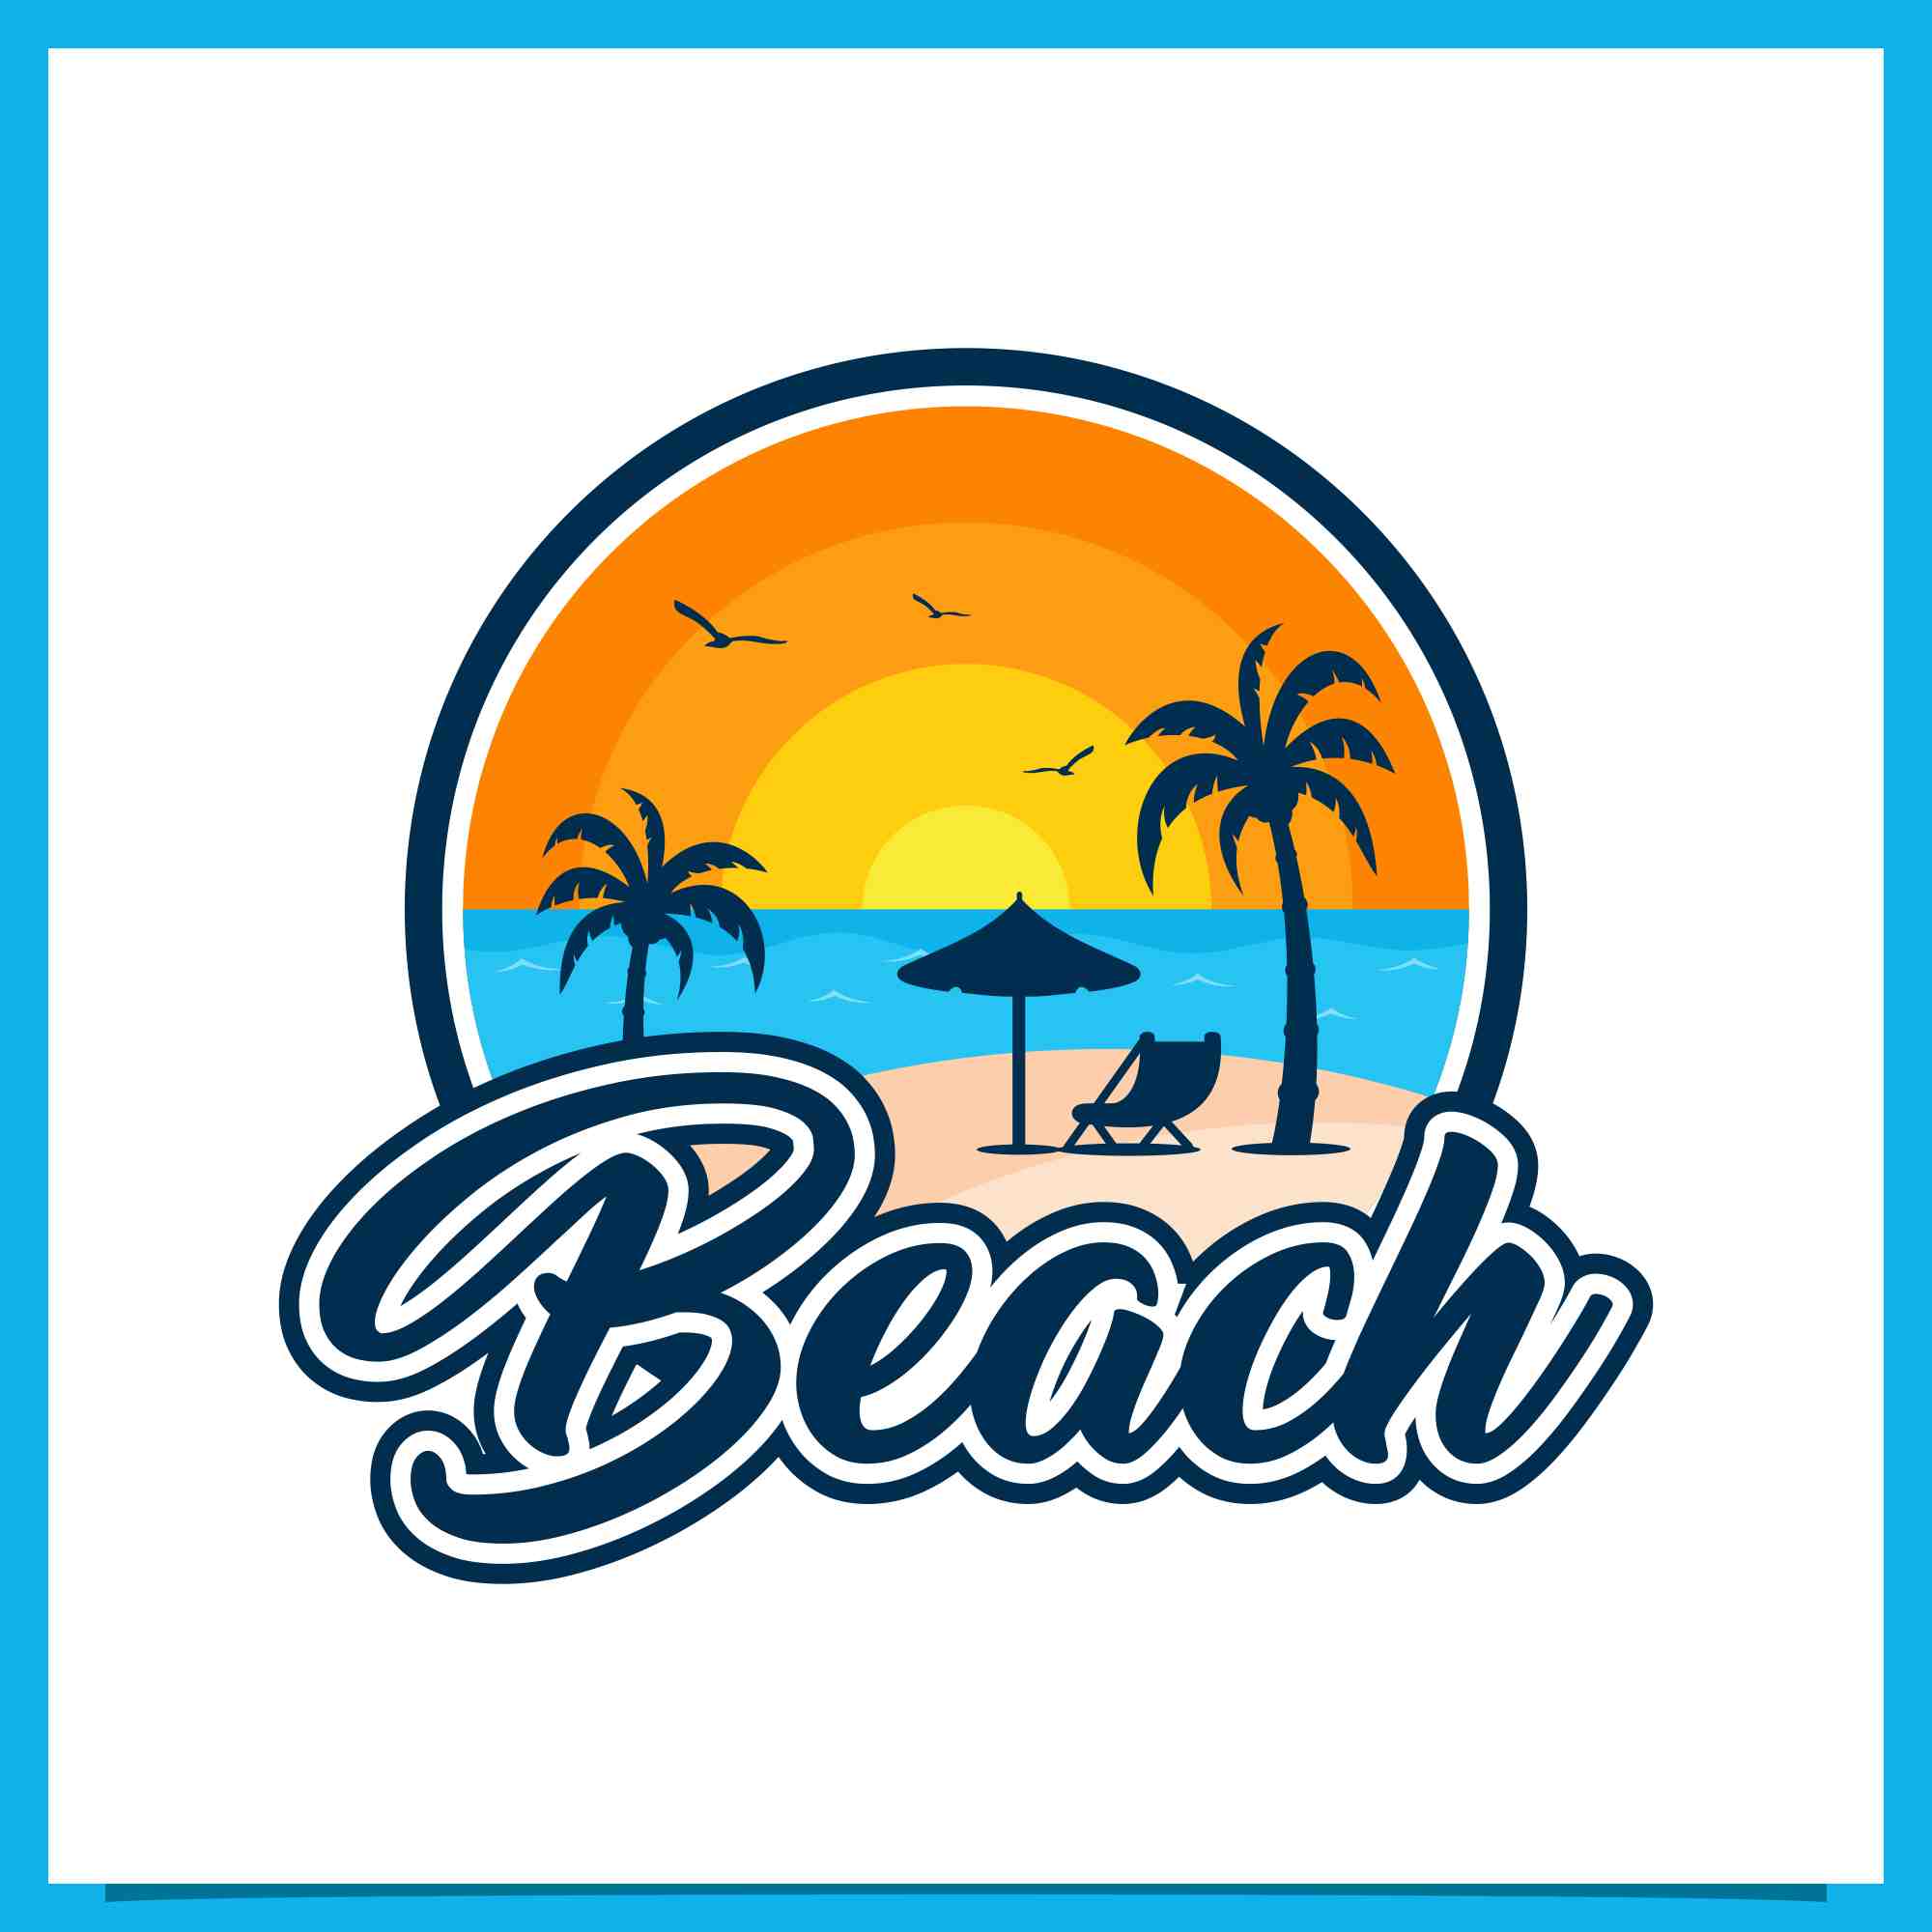 Set Beach badge logo design collection - $4 preview image.